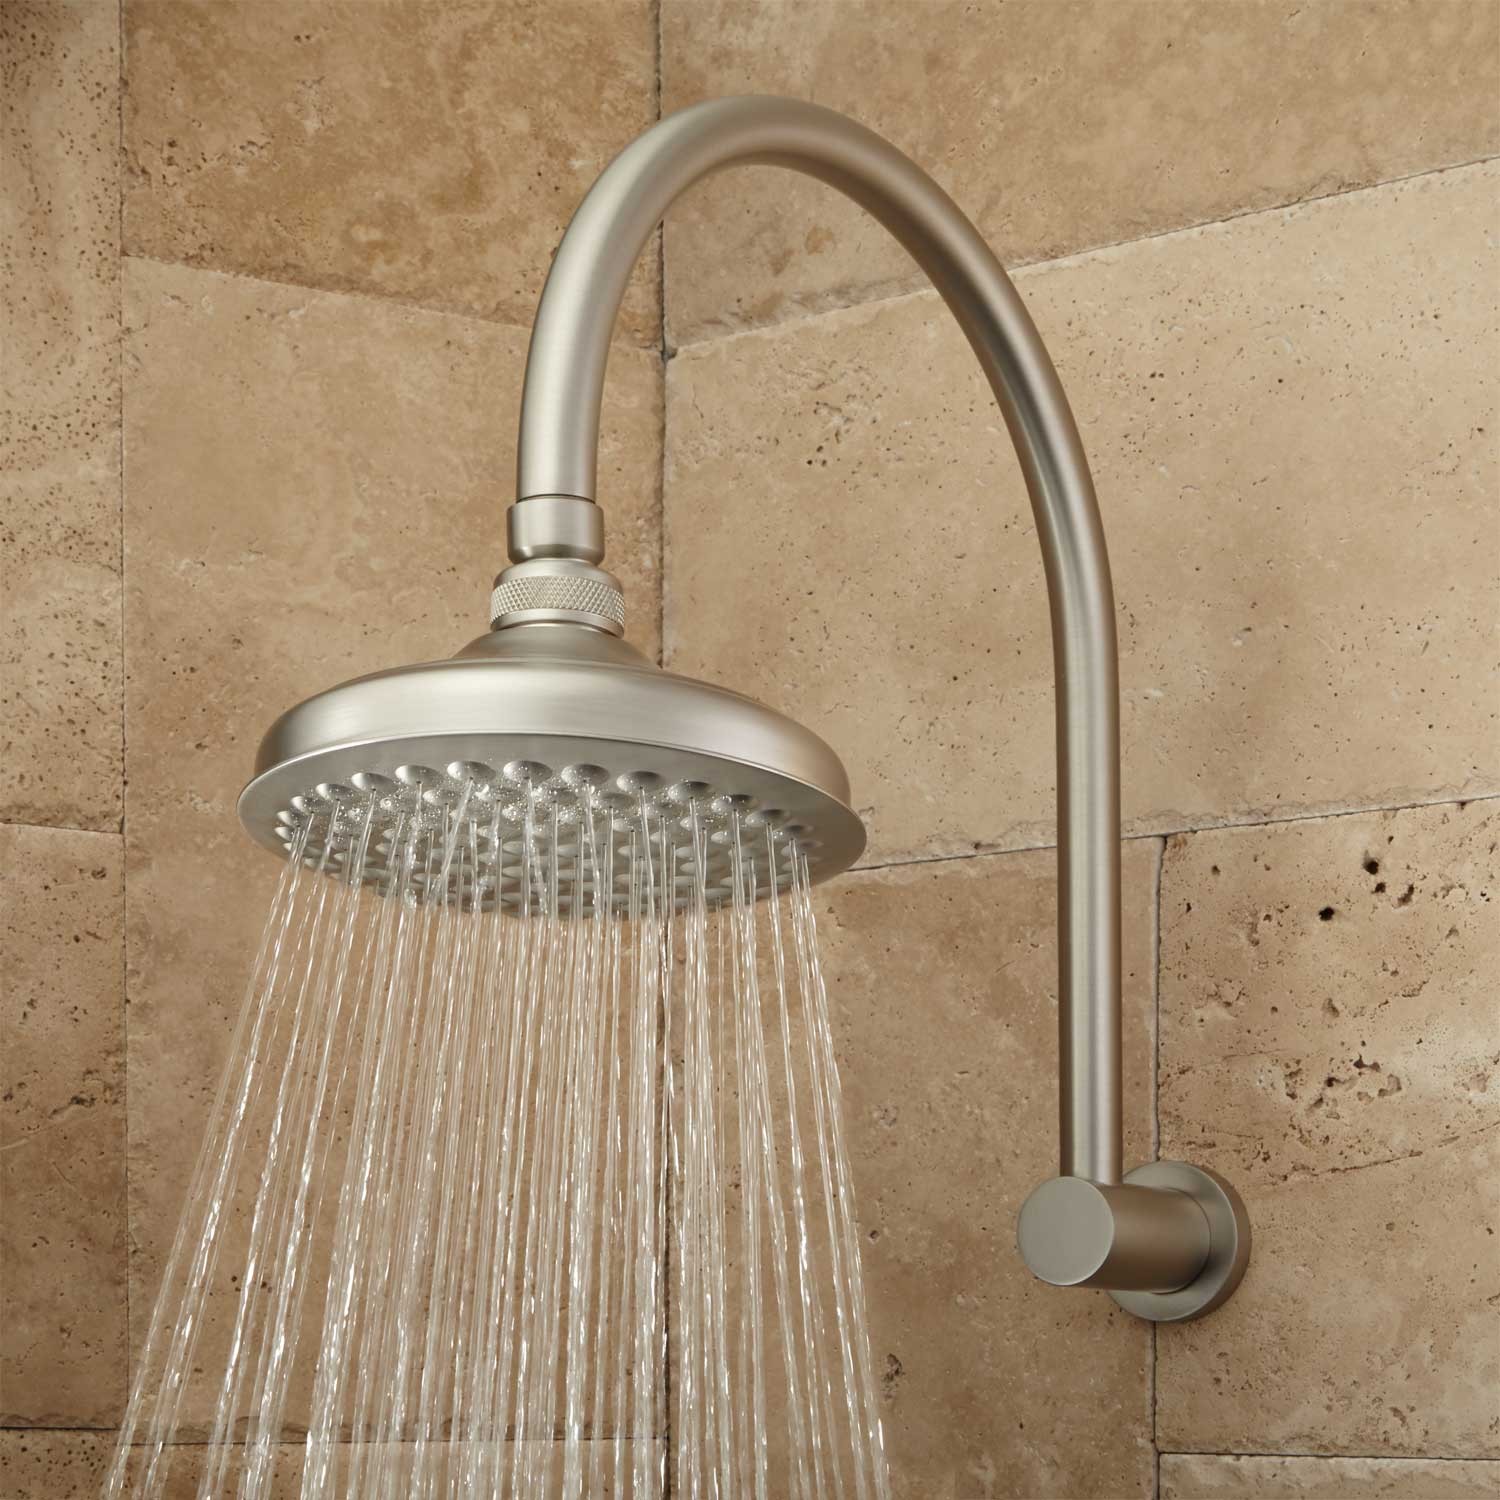 Roux Rainfall Shower Head with Modern Arm - Bathroom